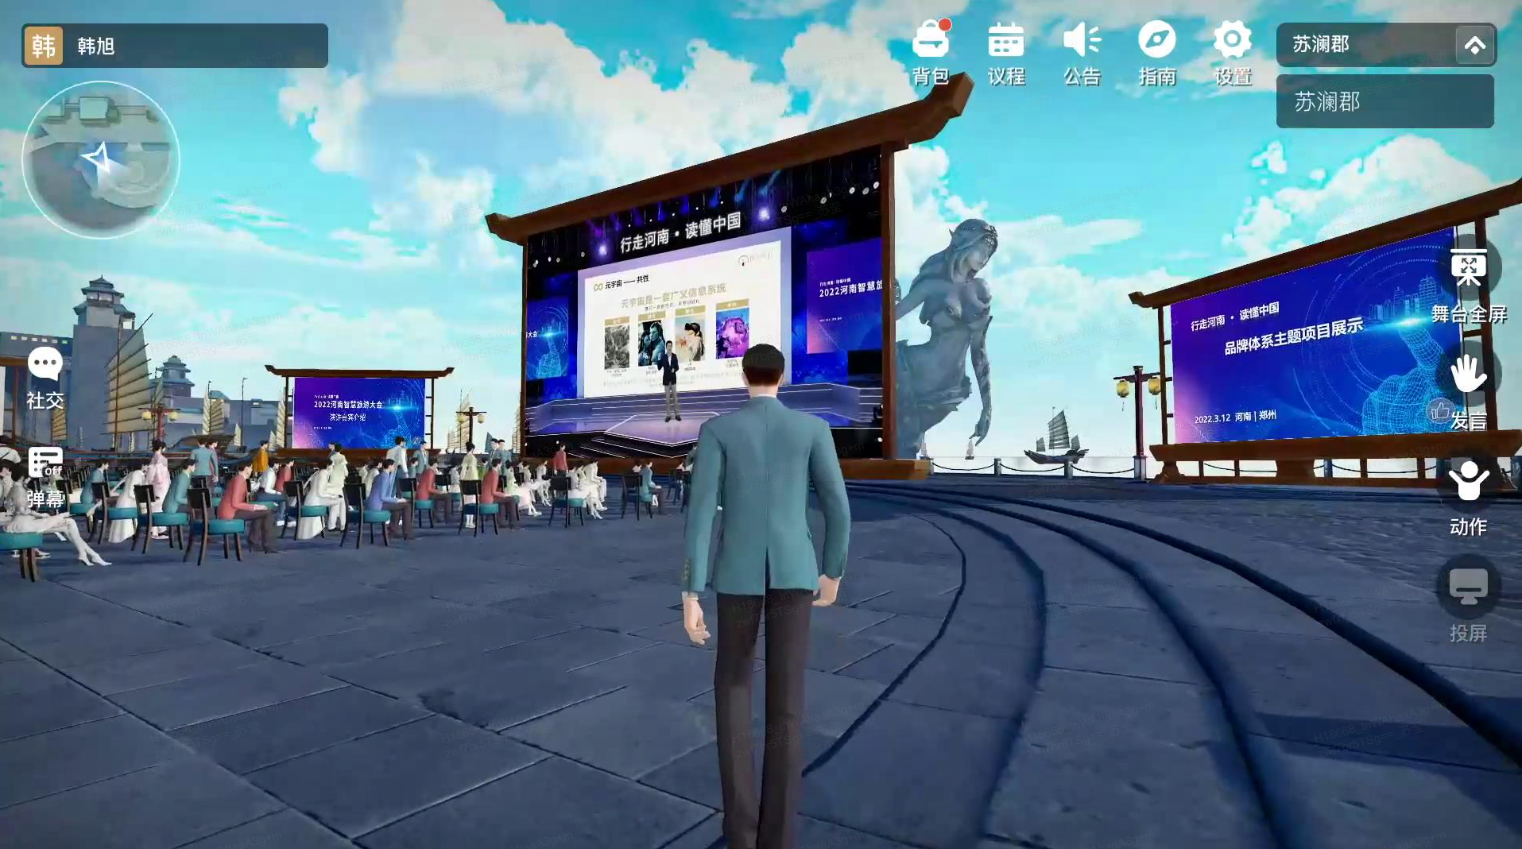 这是一张游戏内截图，显示一个角色背对镜头，面向一个大型屏幕和观众。屏幕上展示着某种活动或演讲的情景。